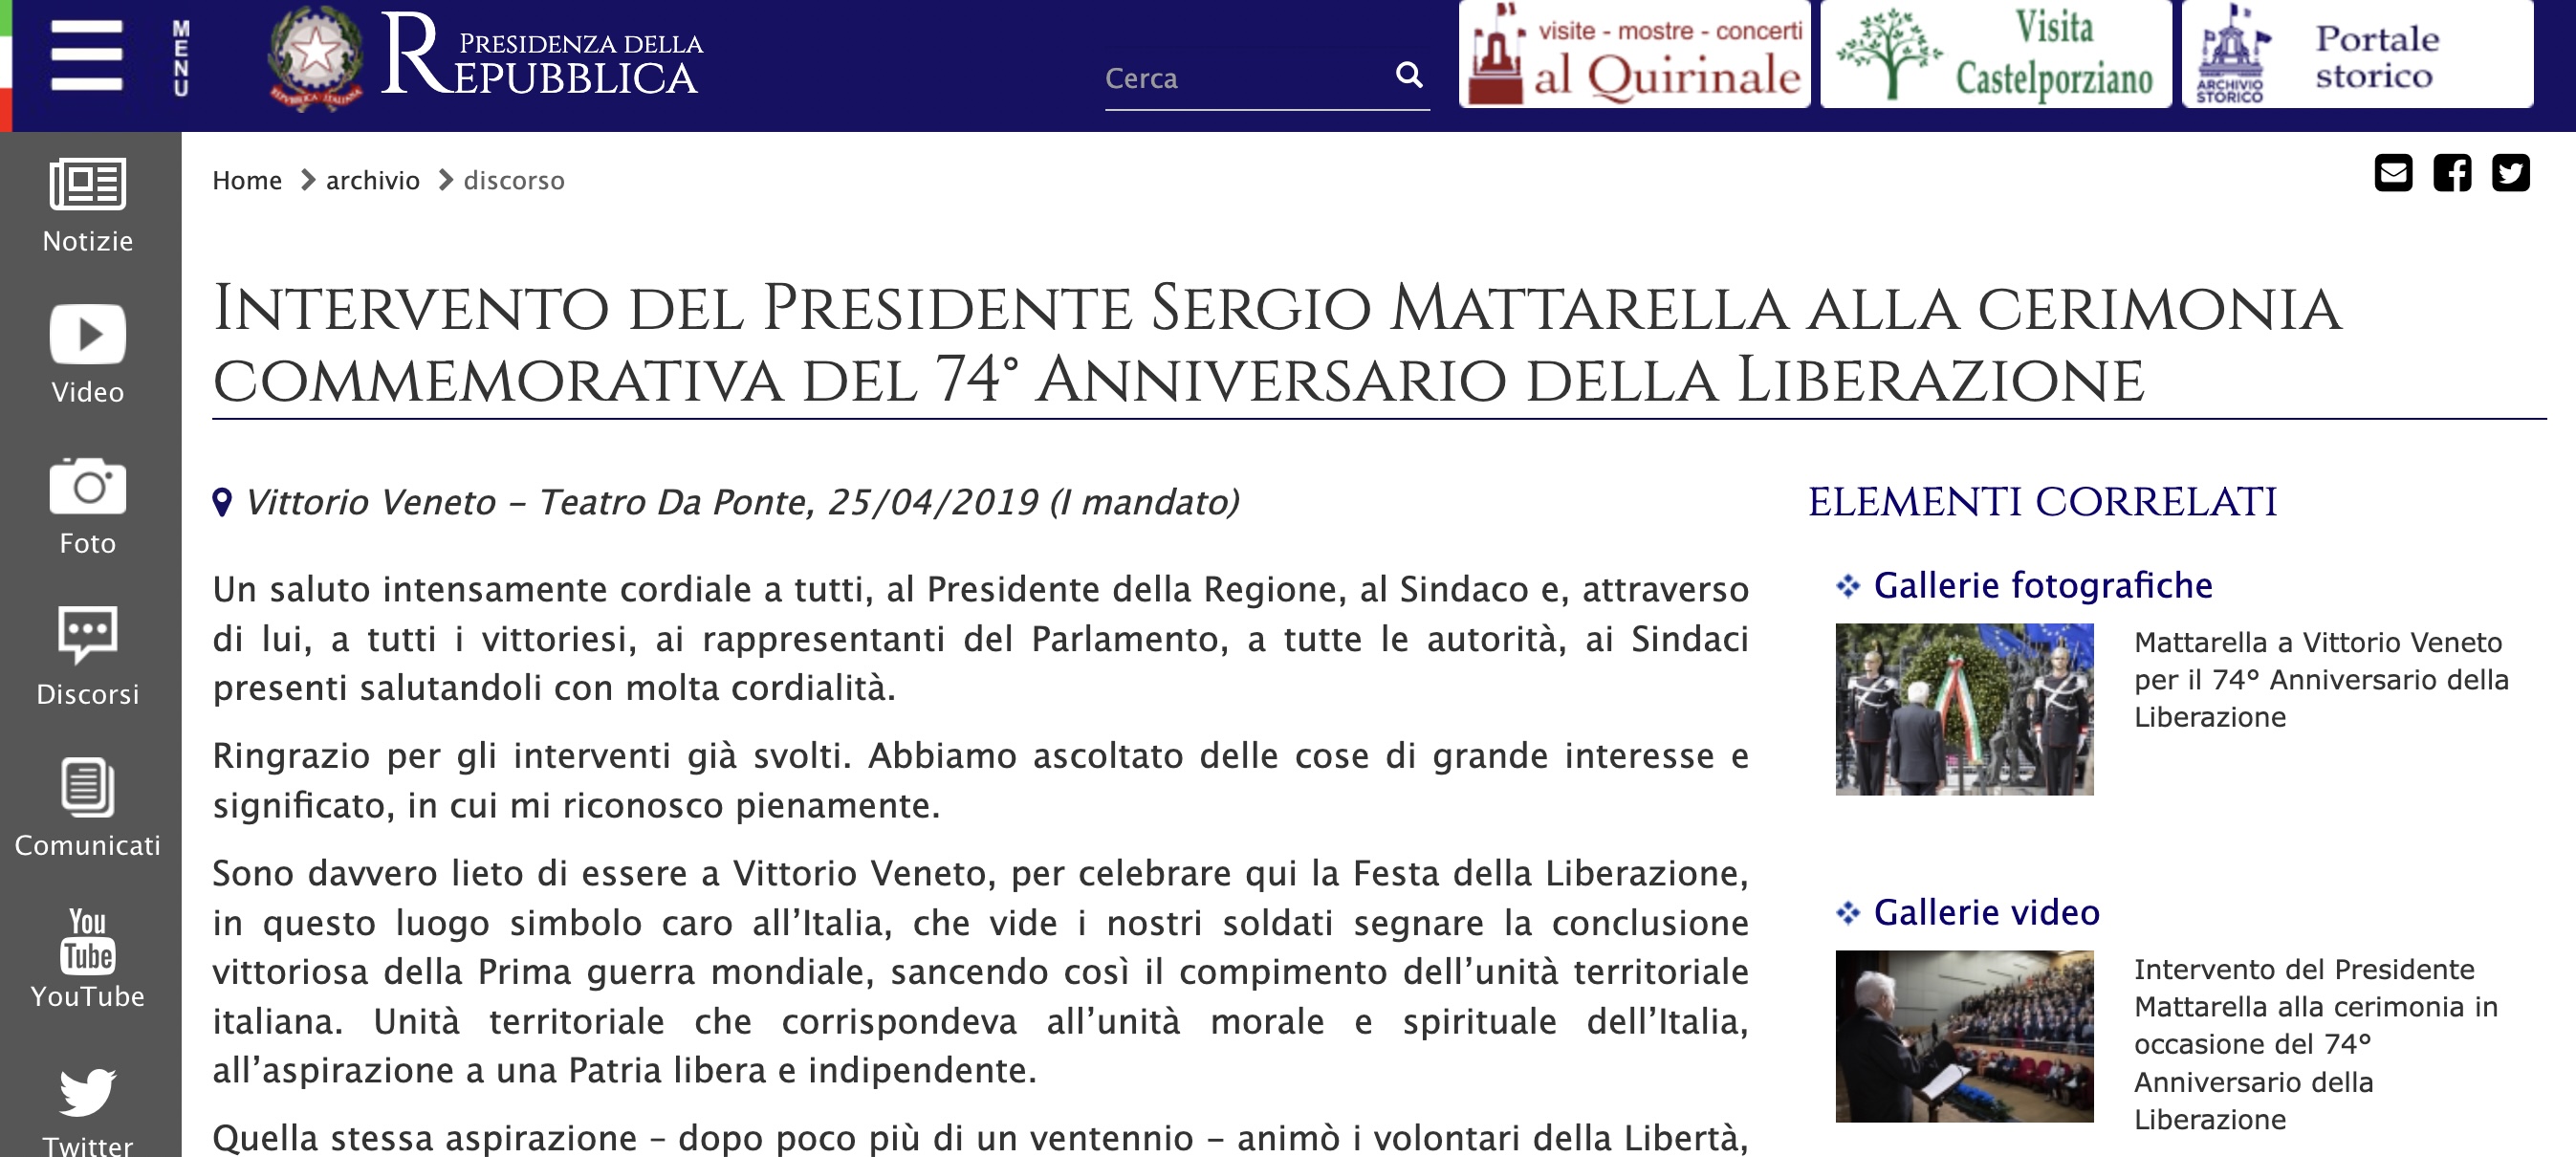 Intervento del Presidente Sergio Mattarella alla cerimonia commemorativa del 74° Anniversario della Liberazione